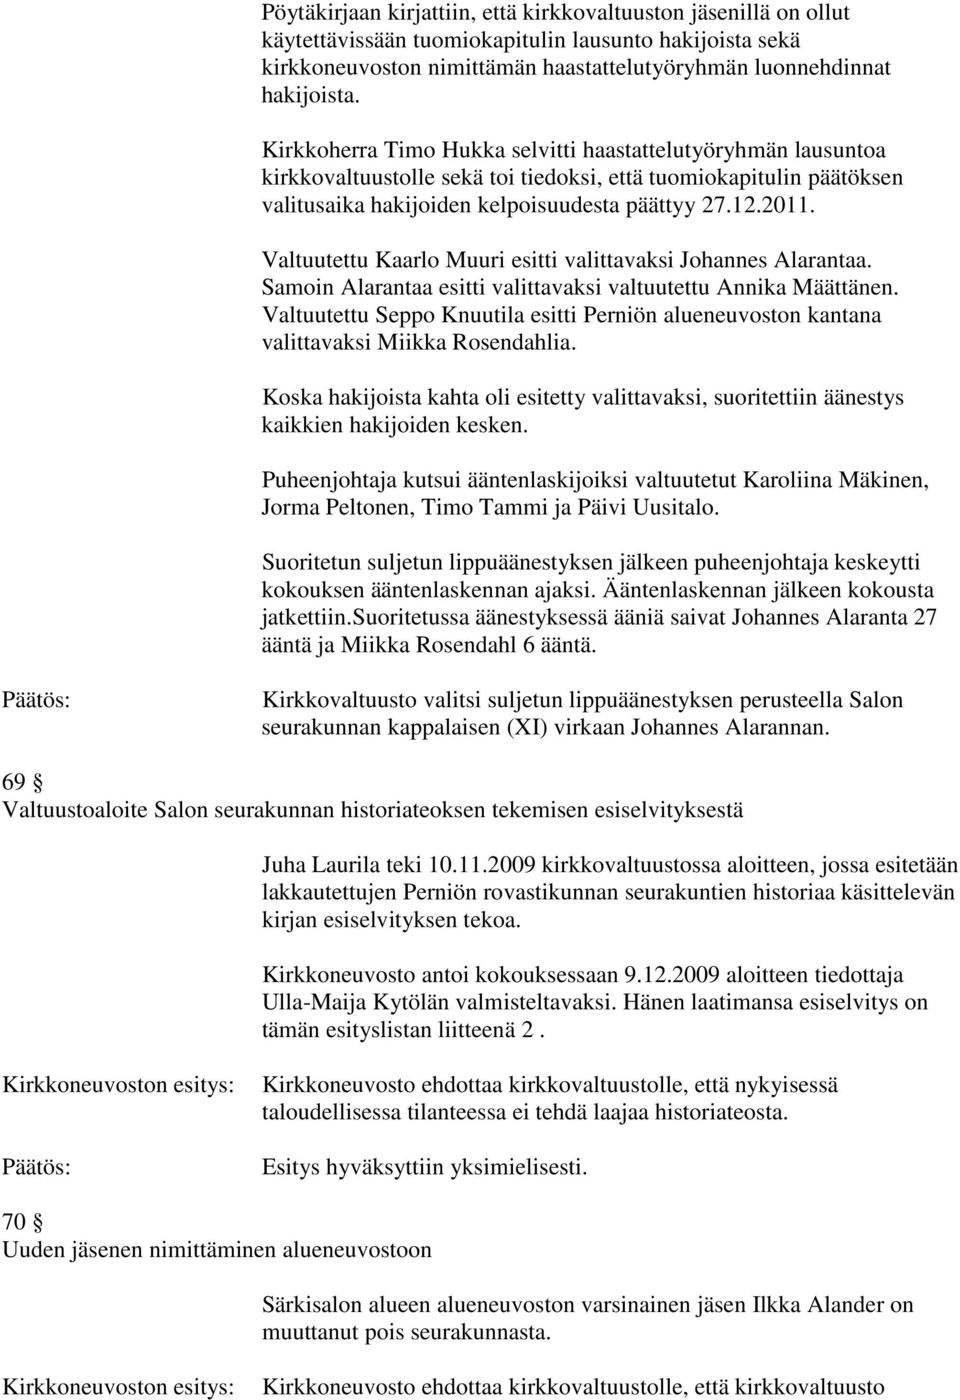 Valtuutettu Kaarlo Muuri esitti valittavaksi Johannes Alarantaa. Samoin Alarantaa esitti valittavaksi valtuutettu Annika Määttänen.